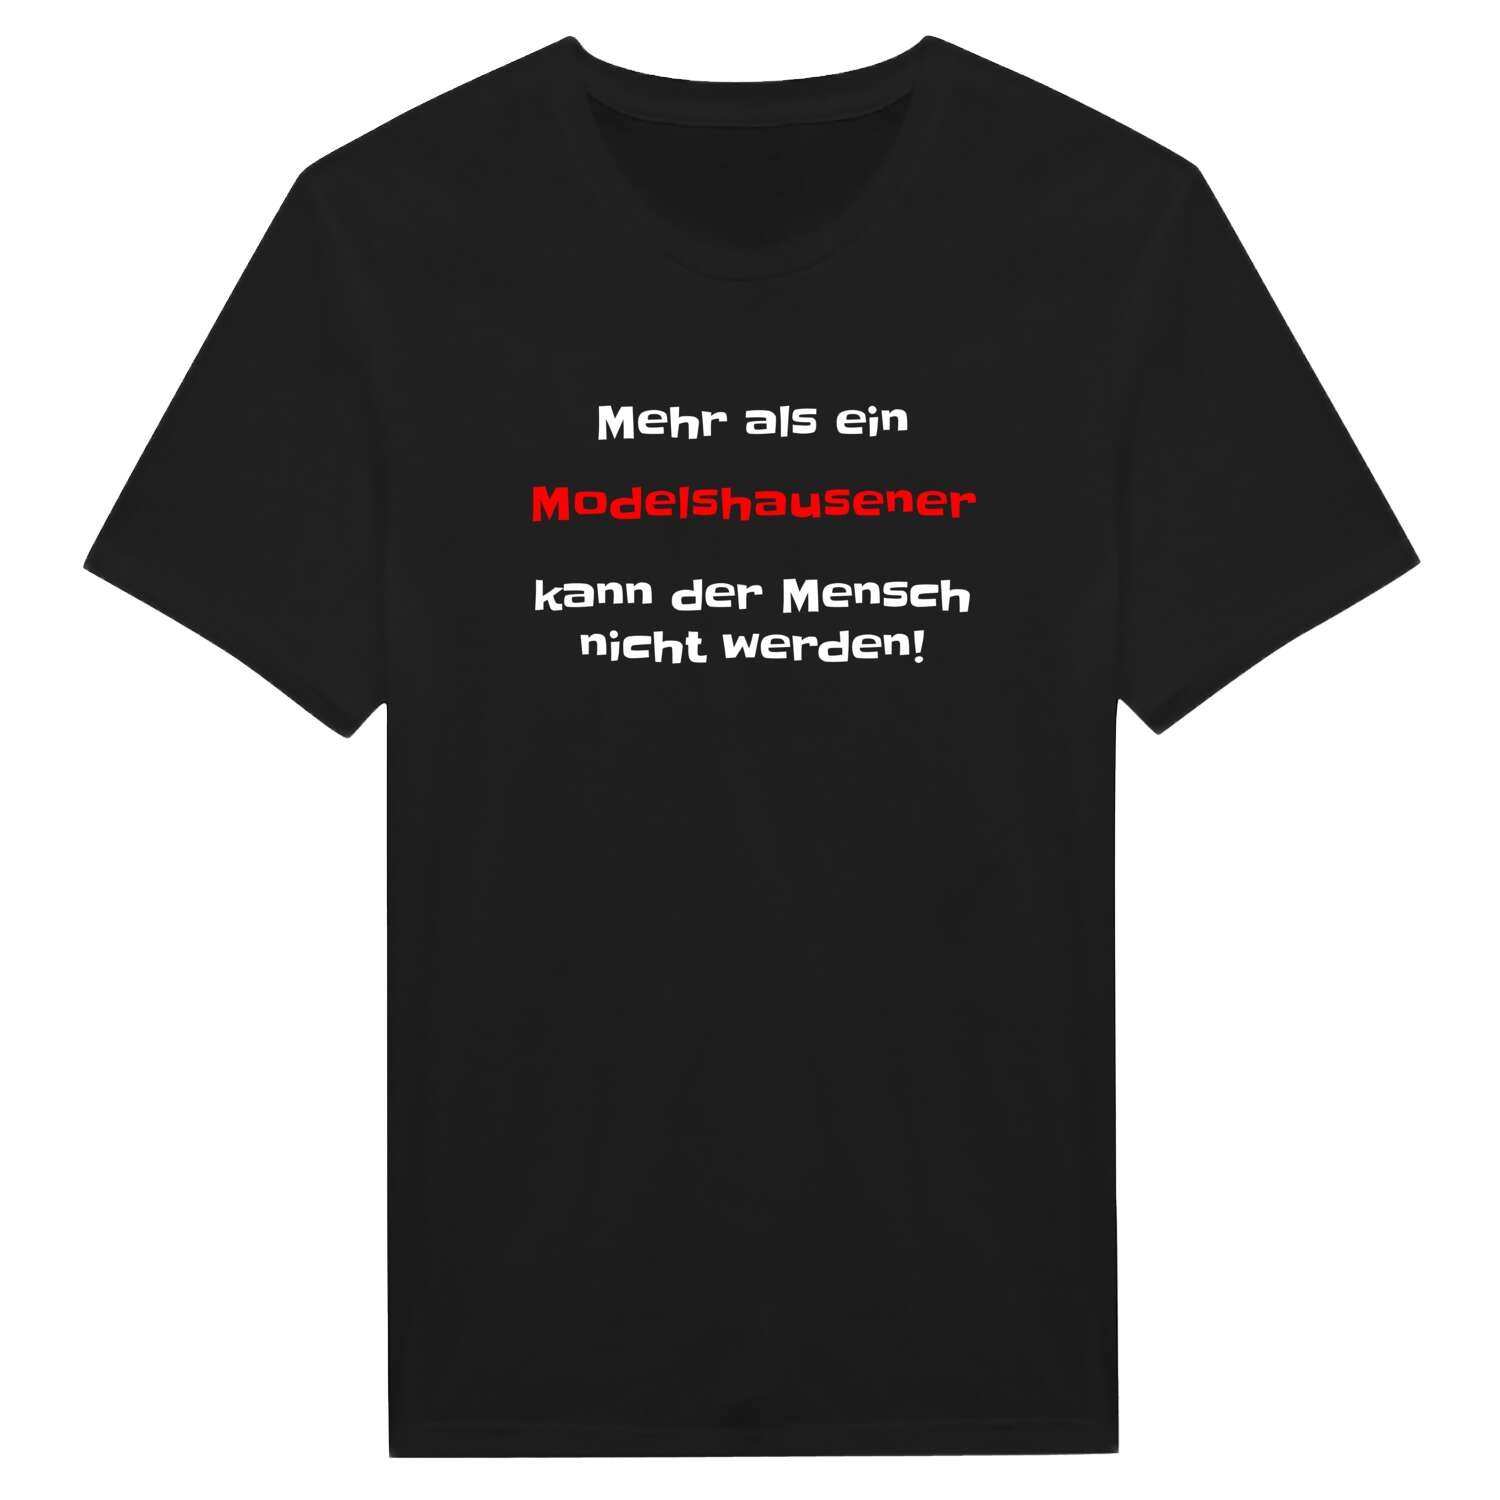 Modelshausen T-Shirt »Mehr als ein«